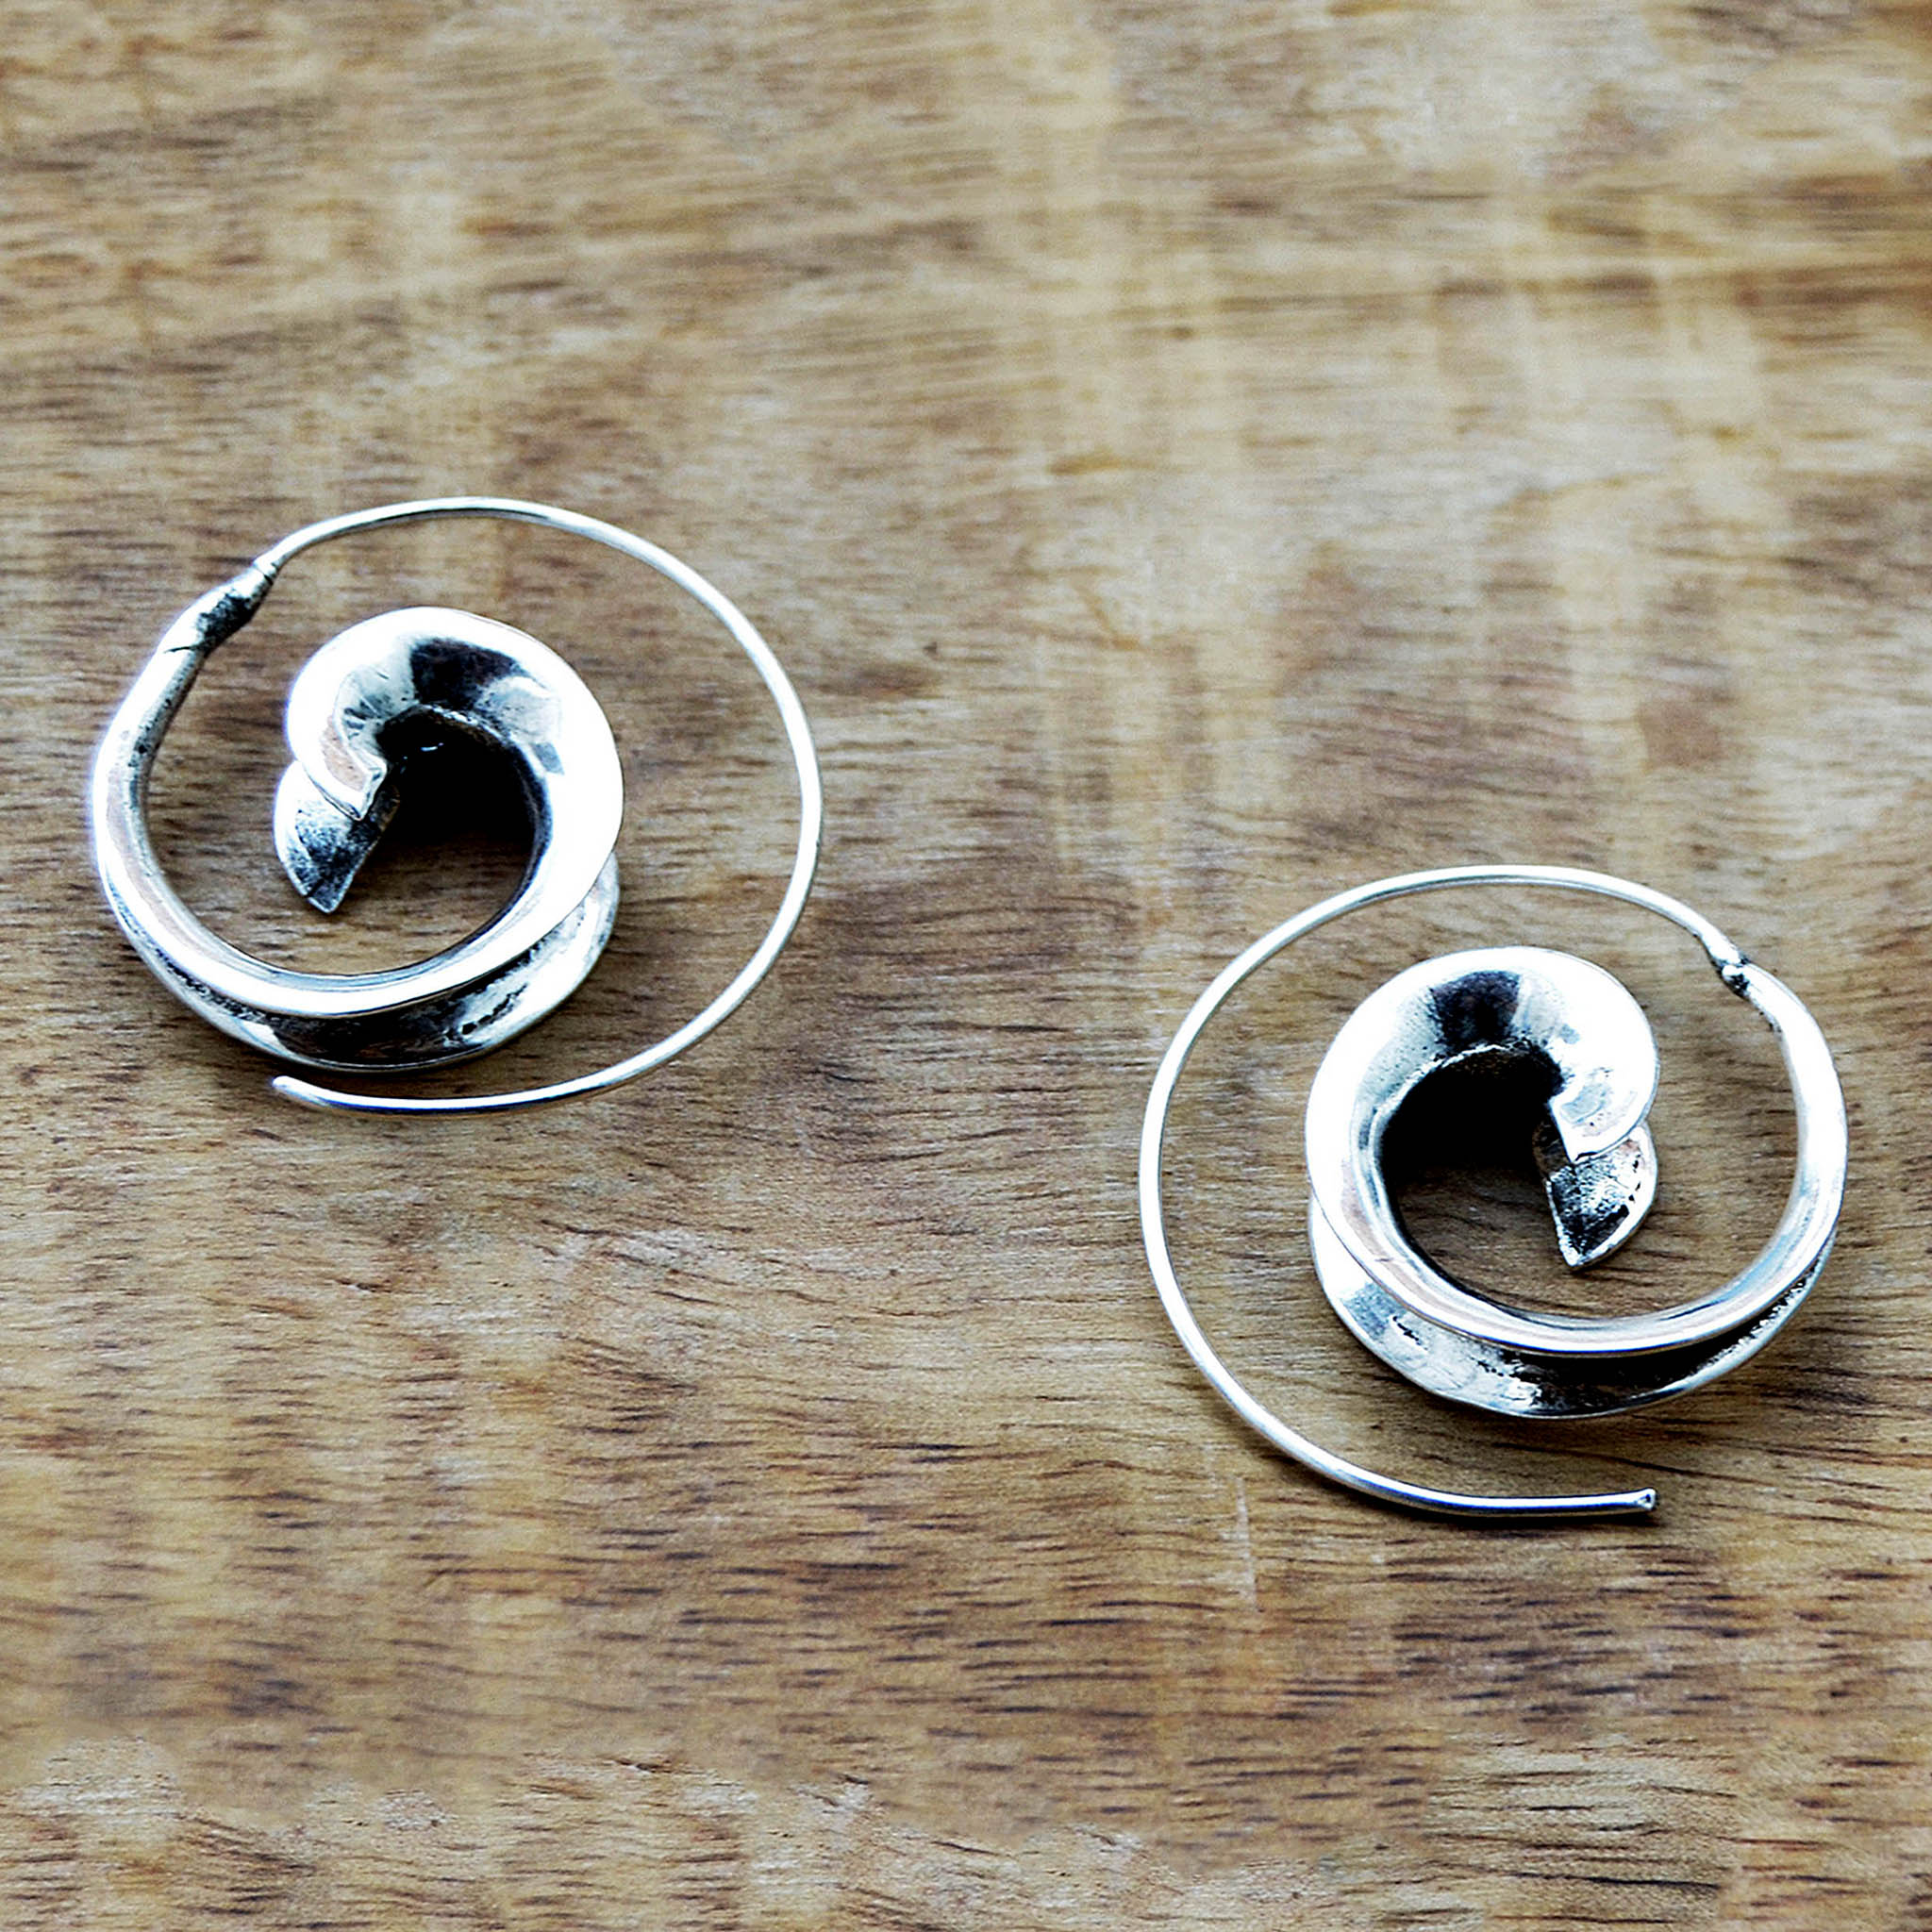 Spiral earrings silver